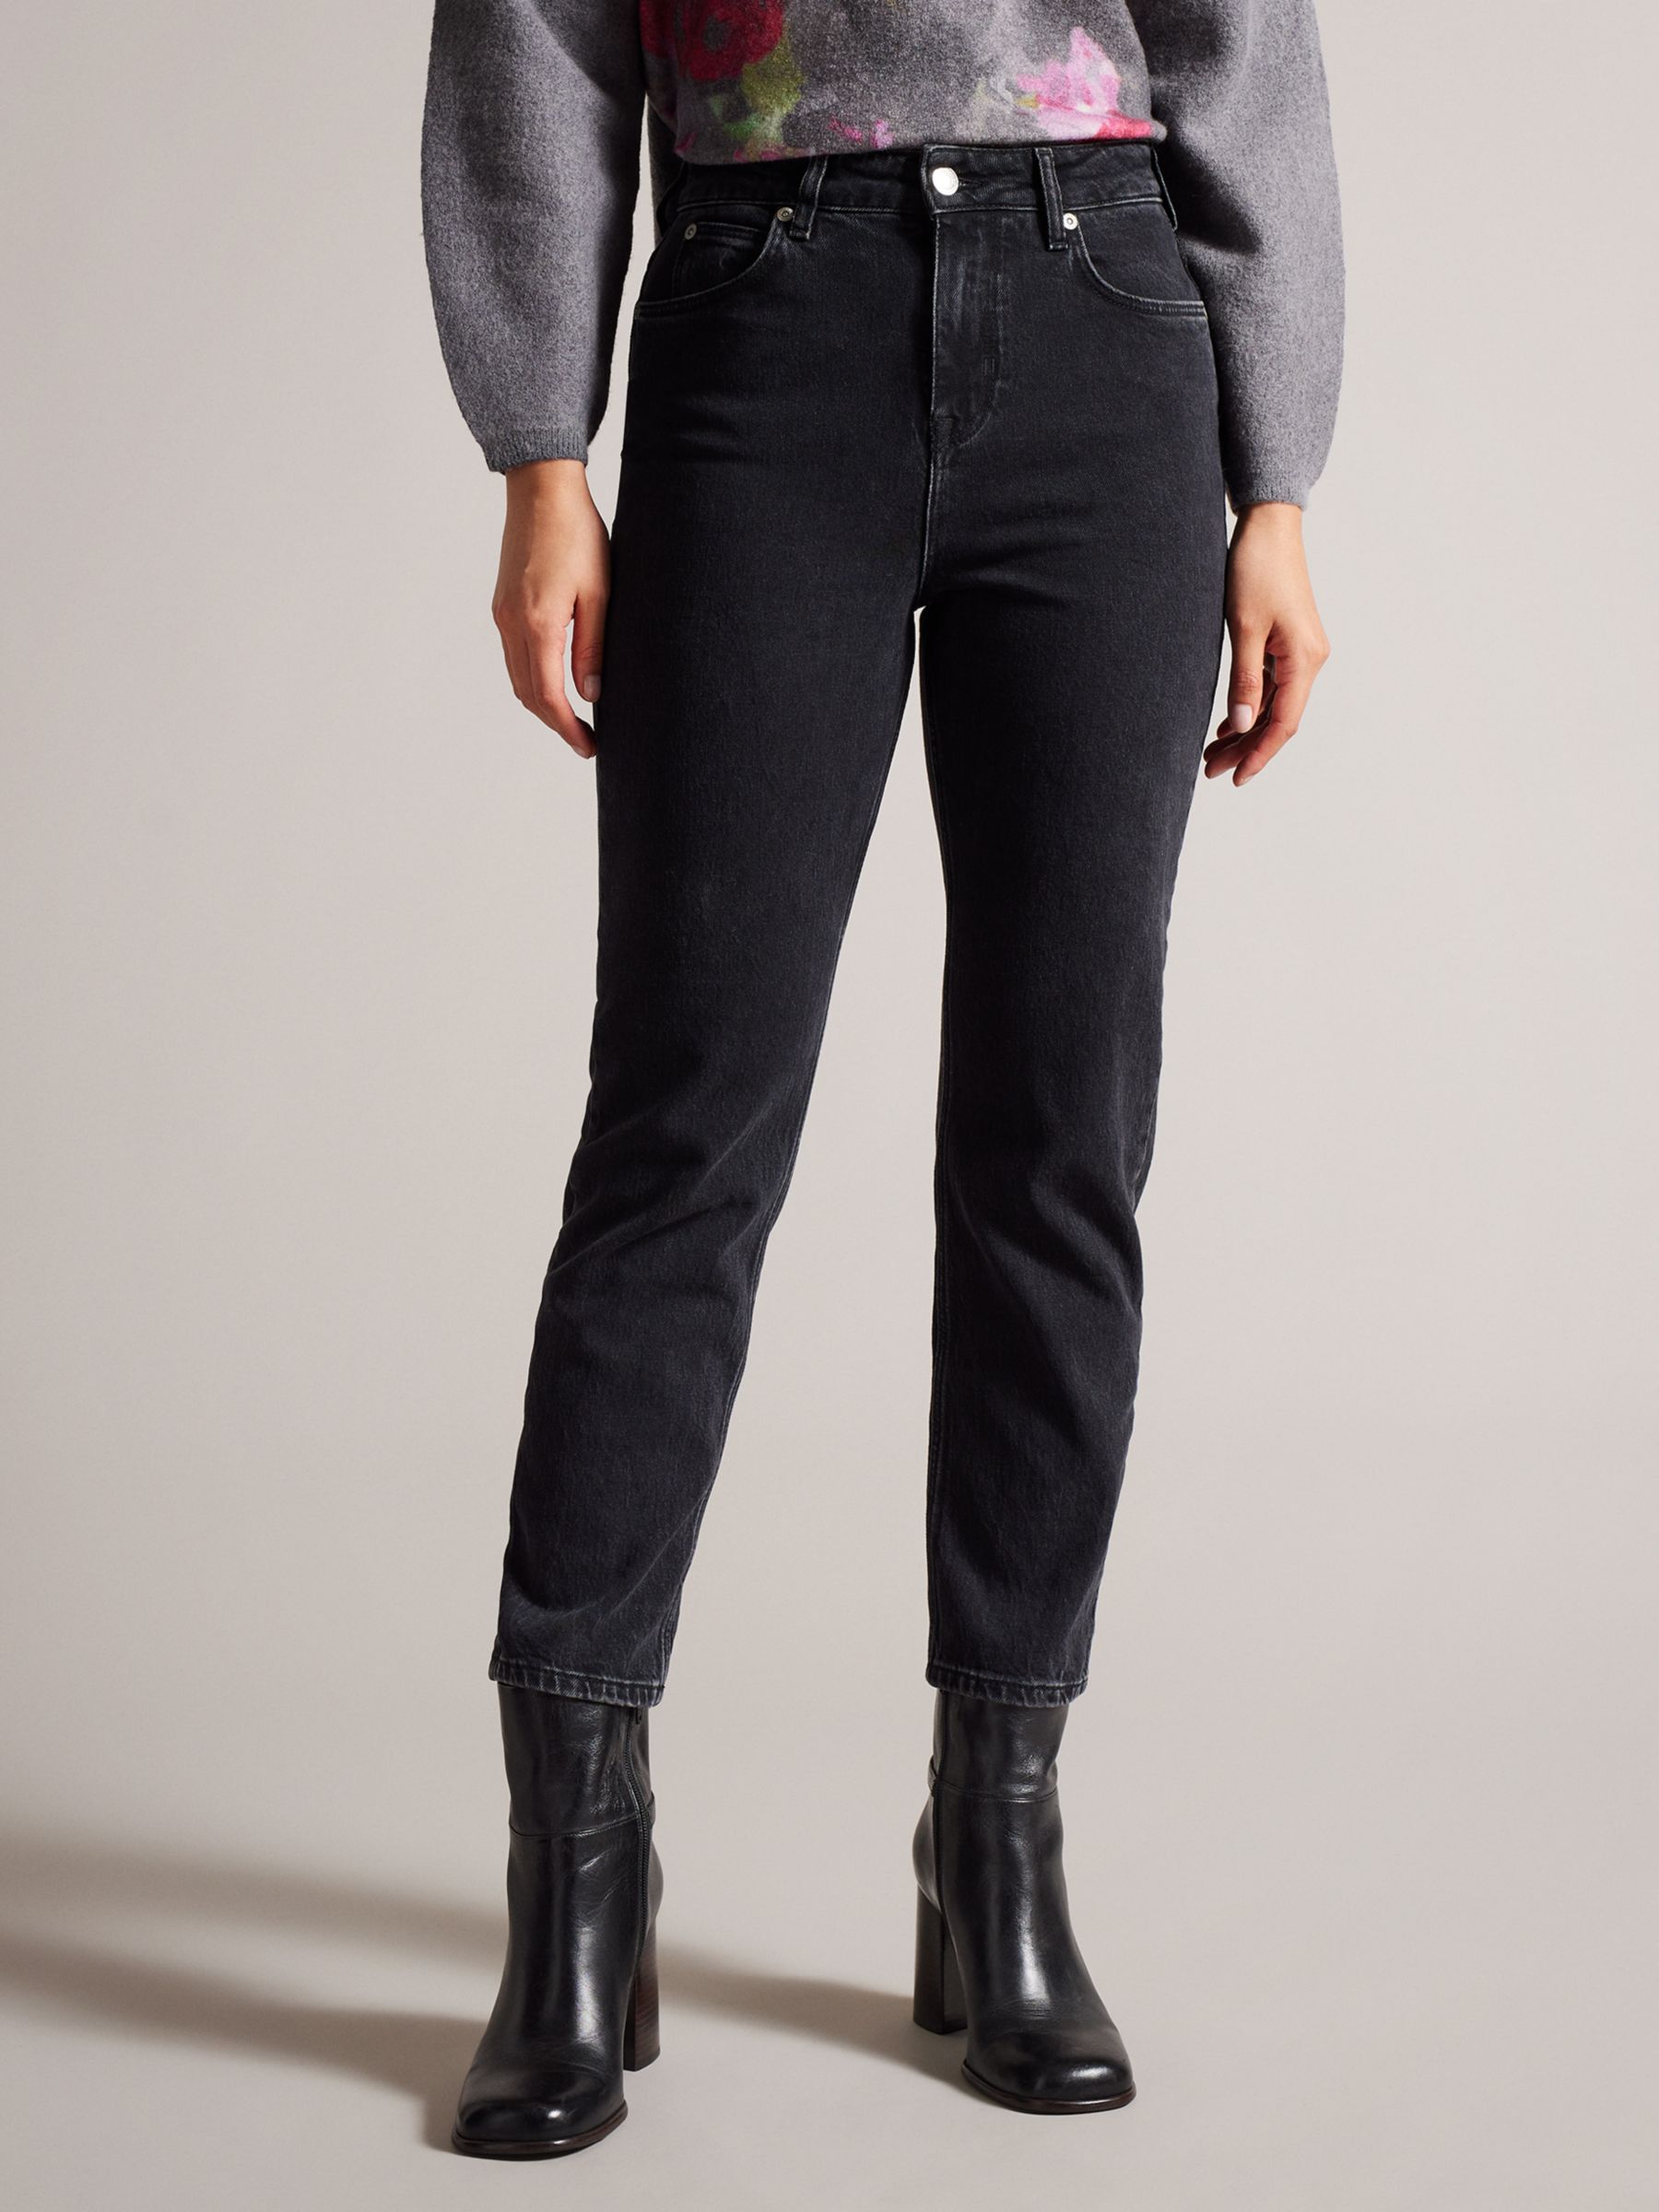 Джинсы прямого кроя Dahla Ted Baker, черный узкие джинсы женские уличные джинсы с высокой талией длиной до щиколотки летние модные женские джинсы стрейч с прямыми штанинами